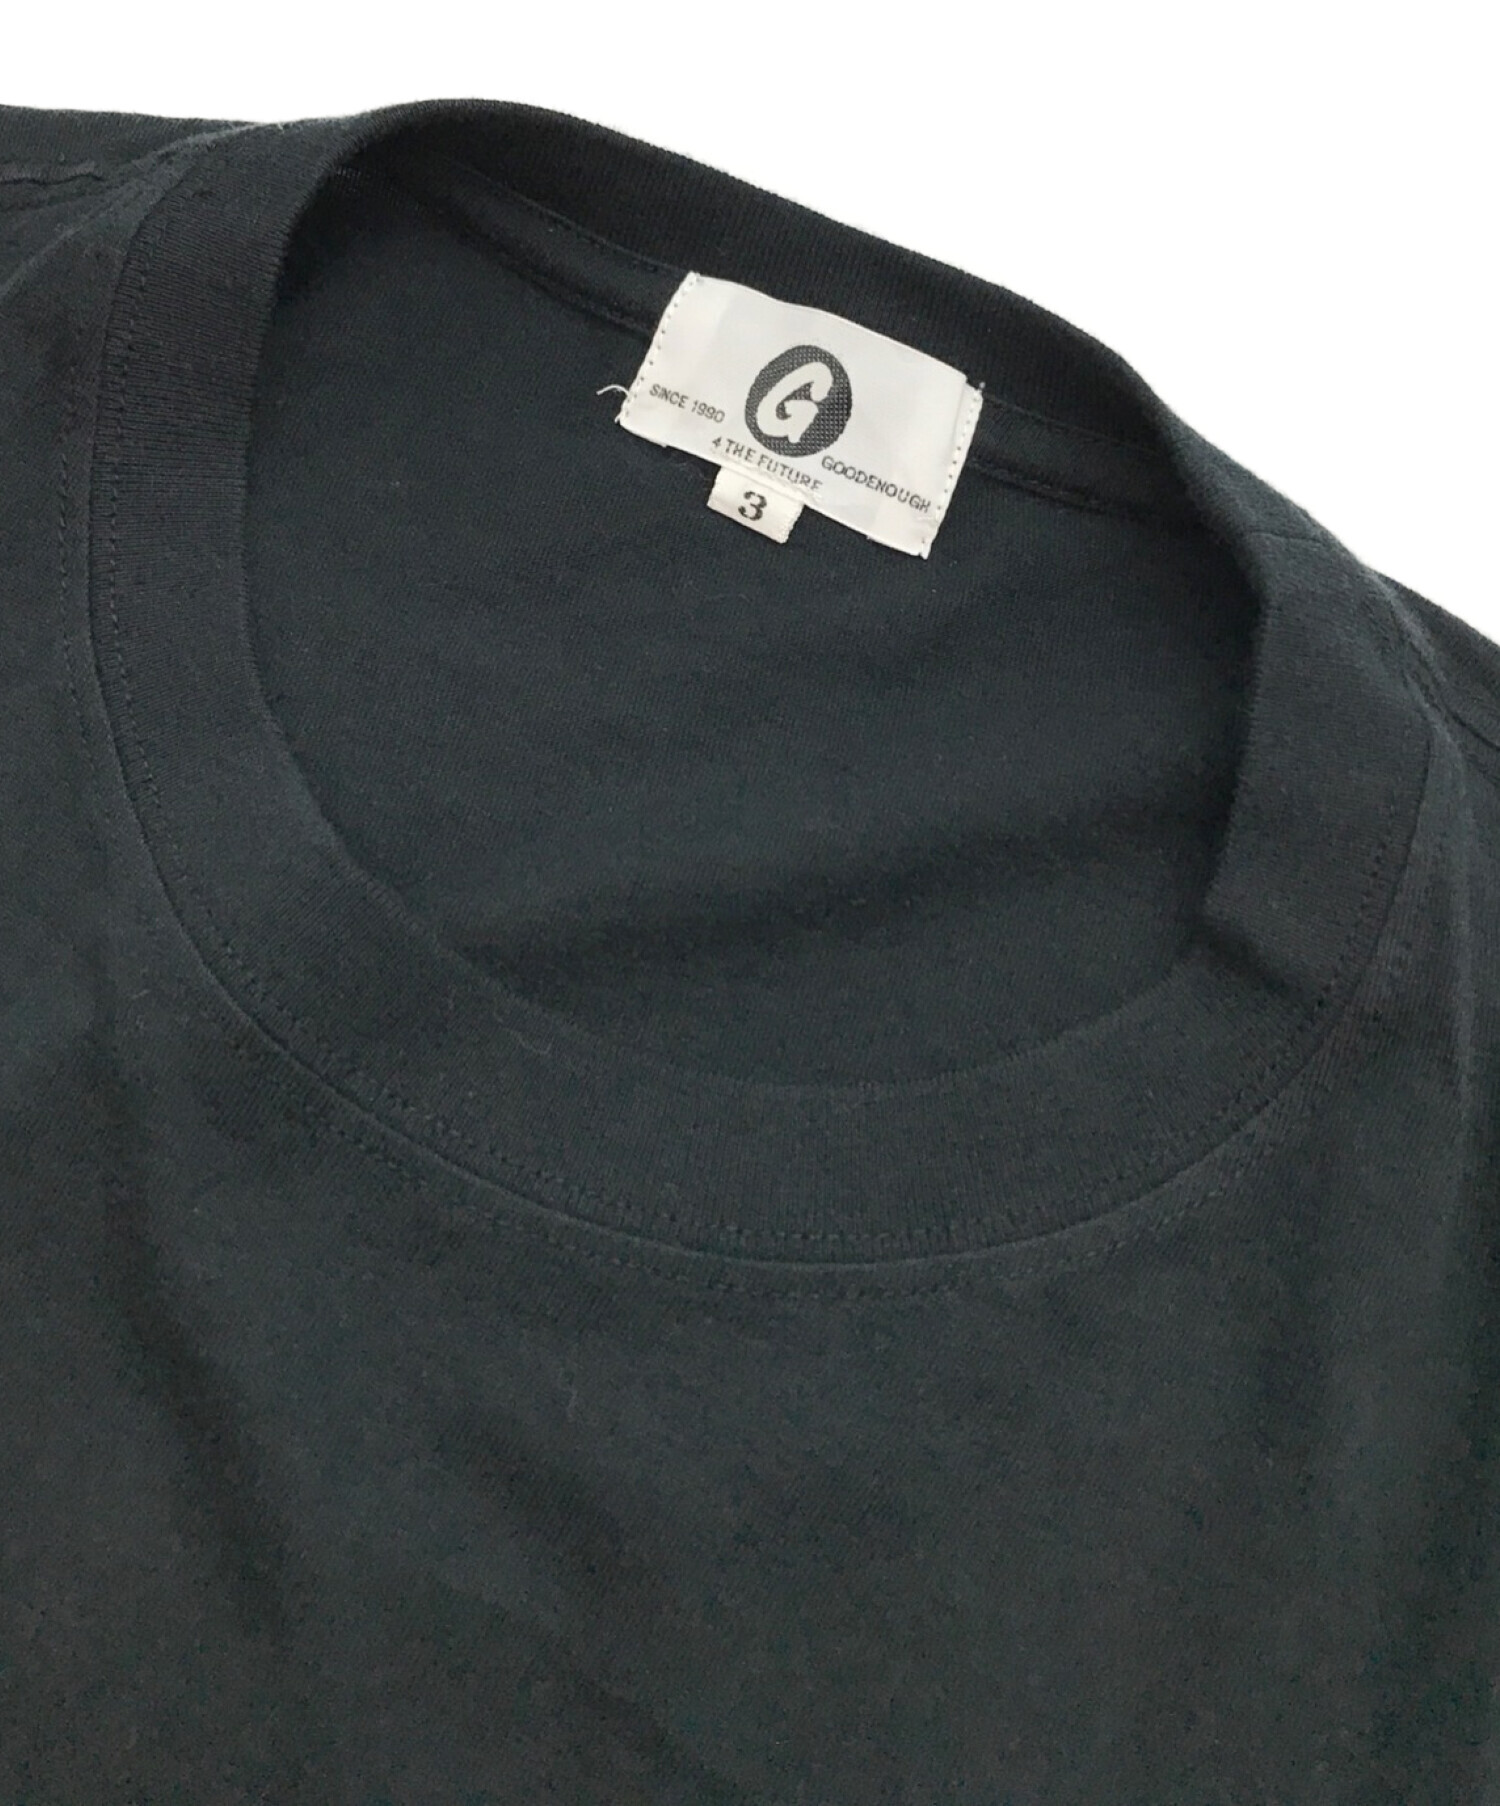 GOOD ENOUGH Classics (グッドイナフ) FRAGMENT DESIGN (フラグメント デザイン) 90's コラボ  プリントポケットTシャツ ブラック サイズ:3